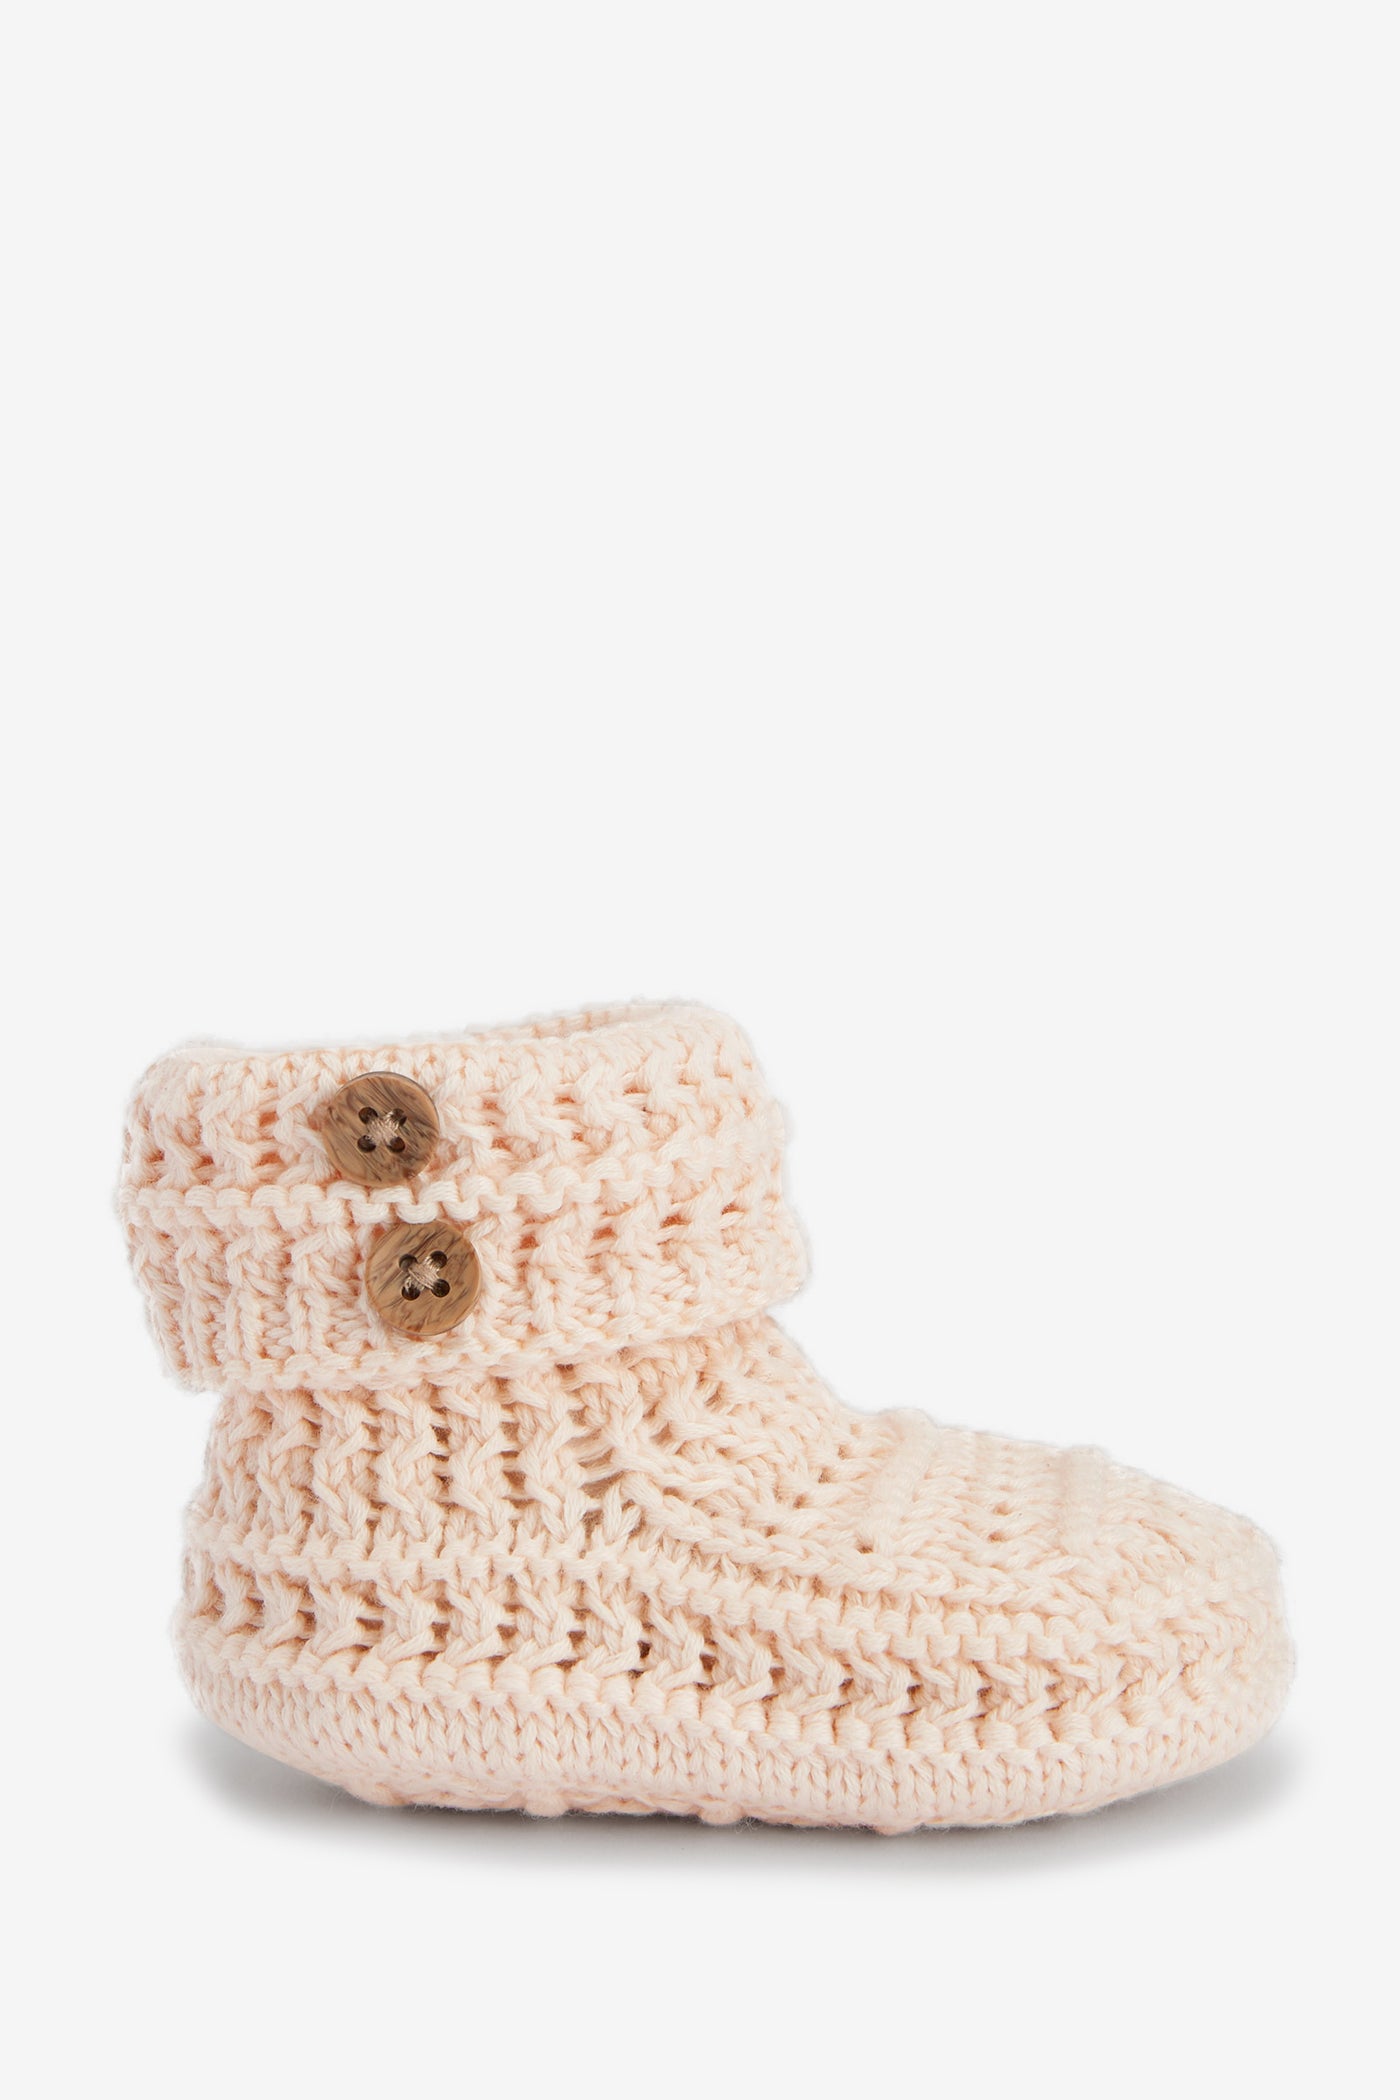 Crochet Cotton Booties, pink